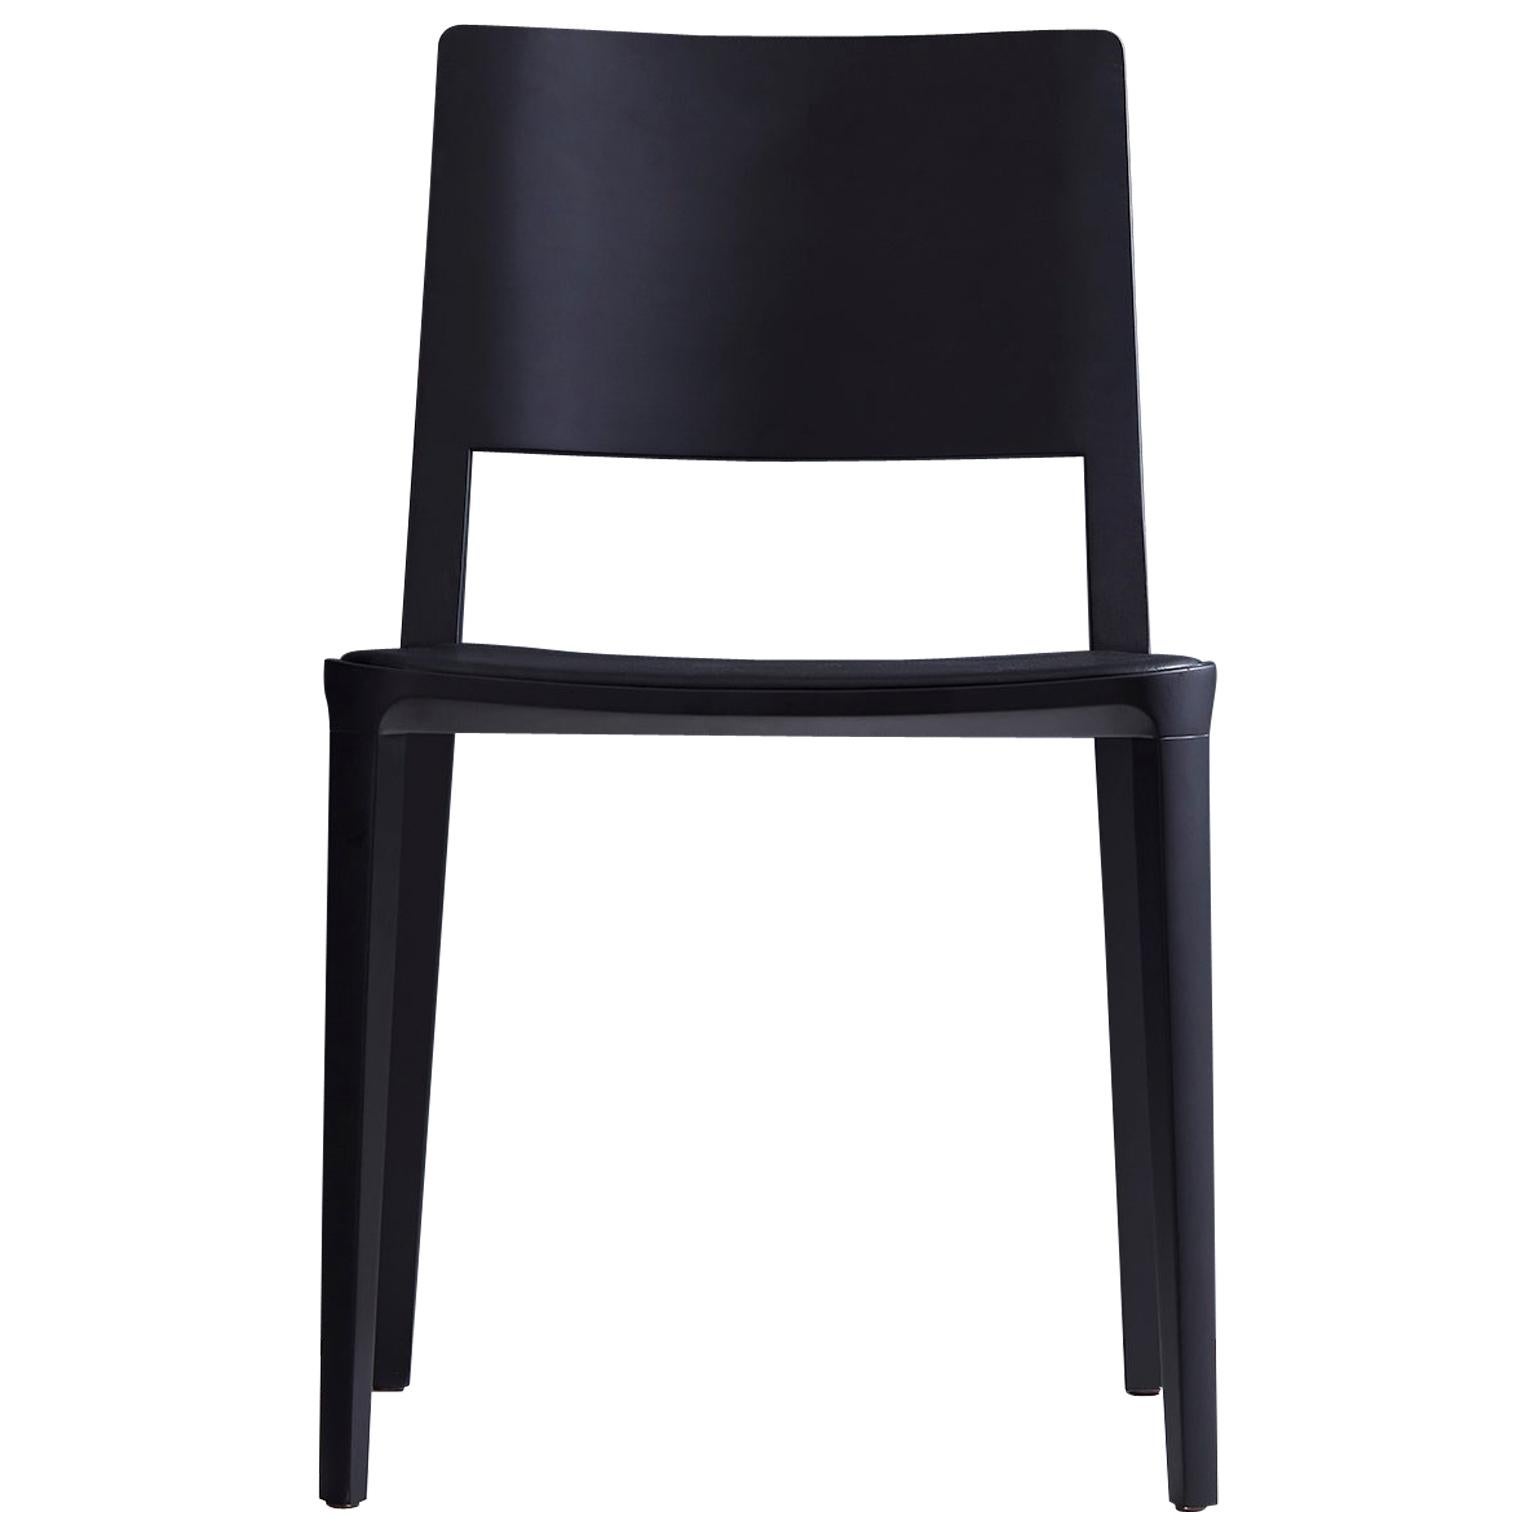 Kollektion Evo Chair.

Unsere Evo-Kollektion basiert auf der harmonischen Verschmelzung von geometrischen Formen und der modernen Interpretation der Archetypen des Holzes. 

Alle Elemente, aus denen sich der Stuhl zusammensetzt, werden präzise